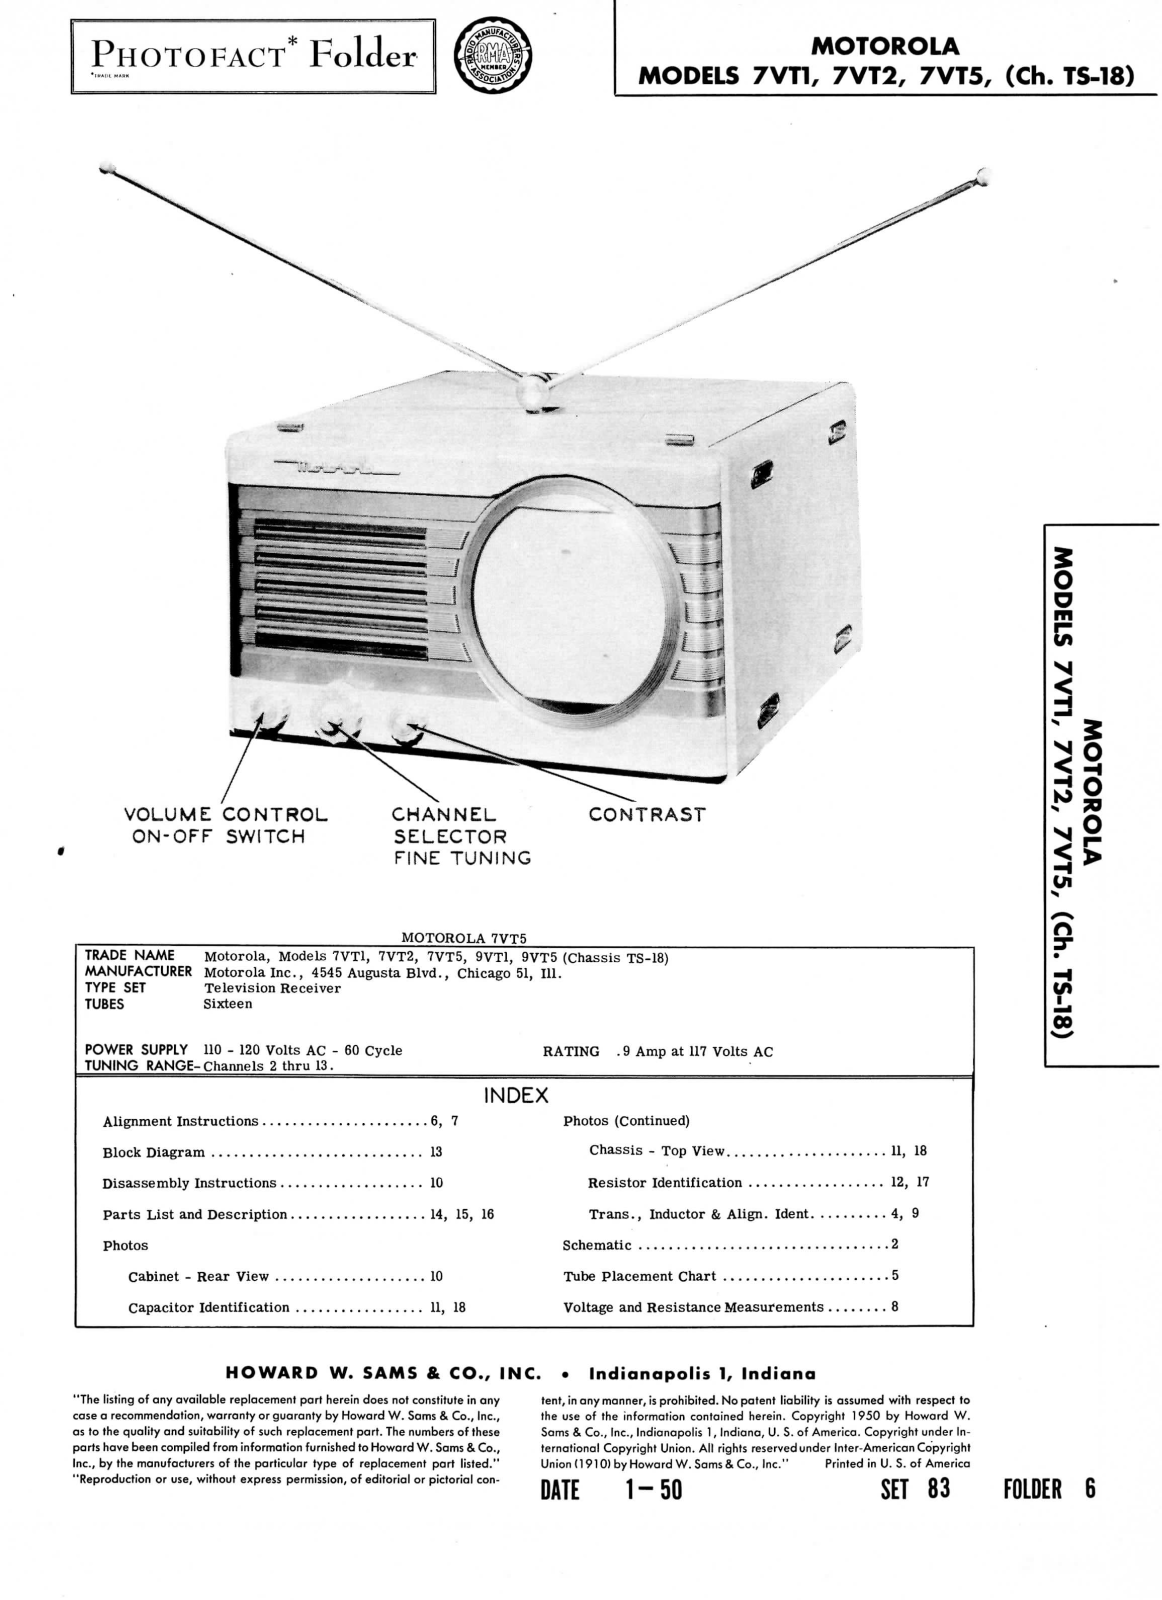 Motorola 7vt1, 7vt2, 7vt5 schematic